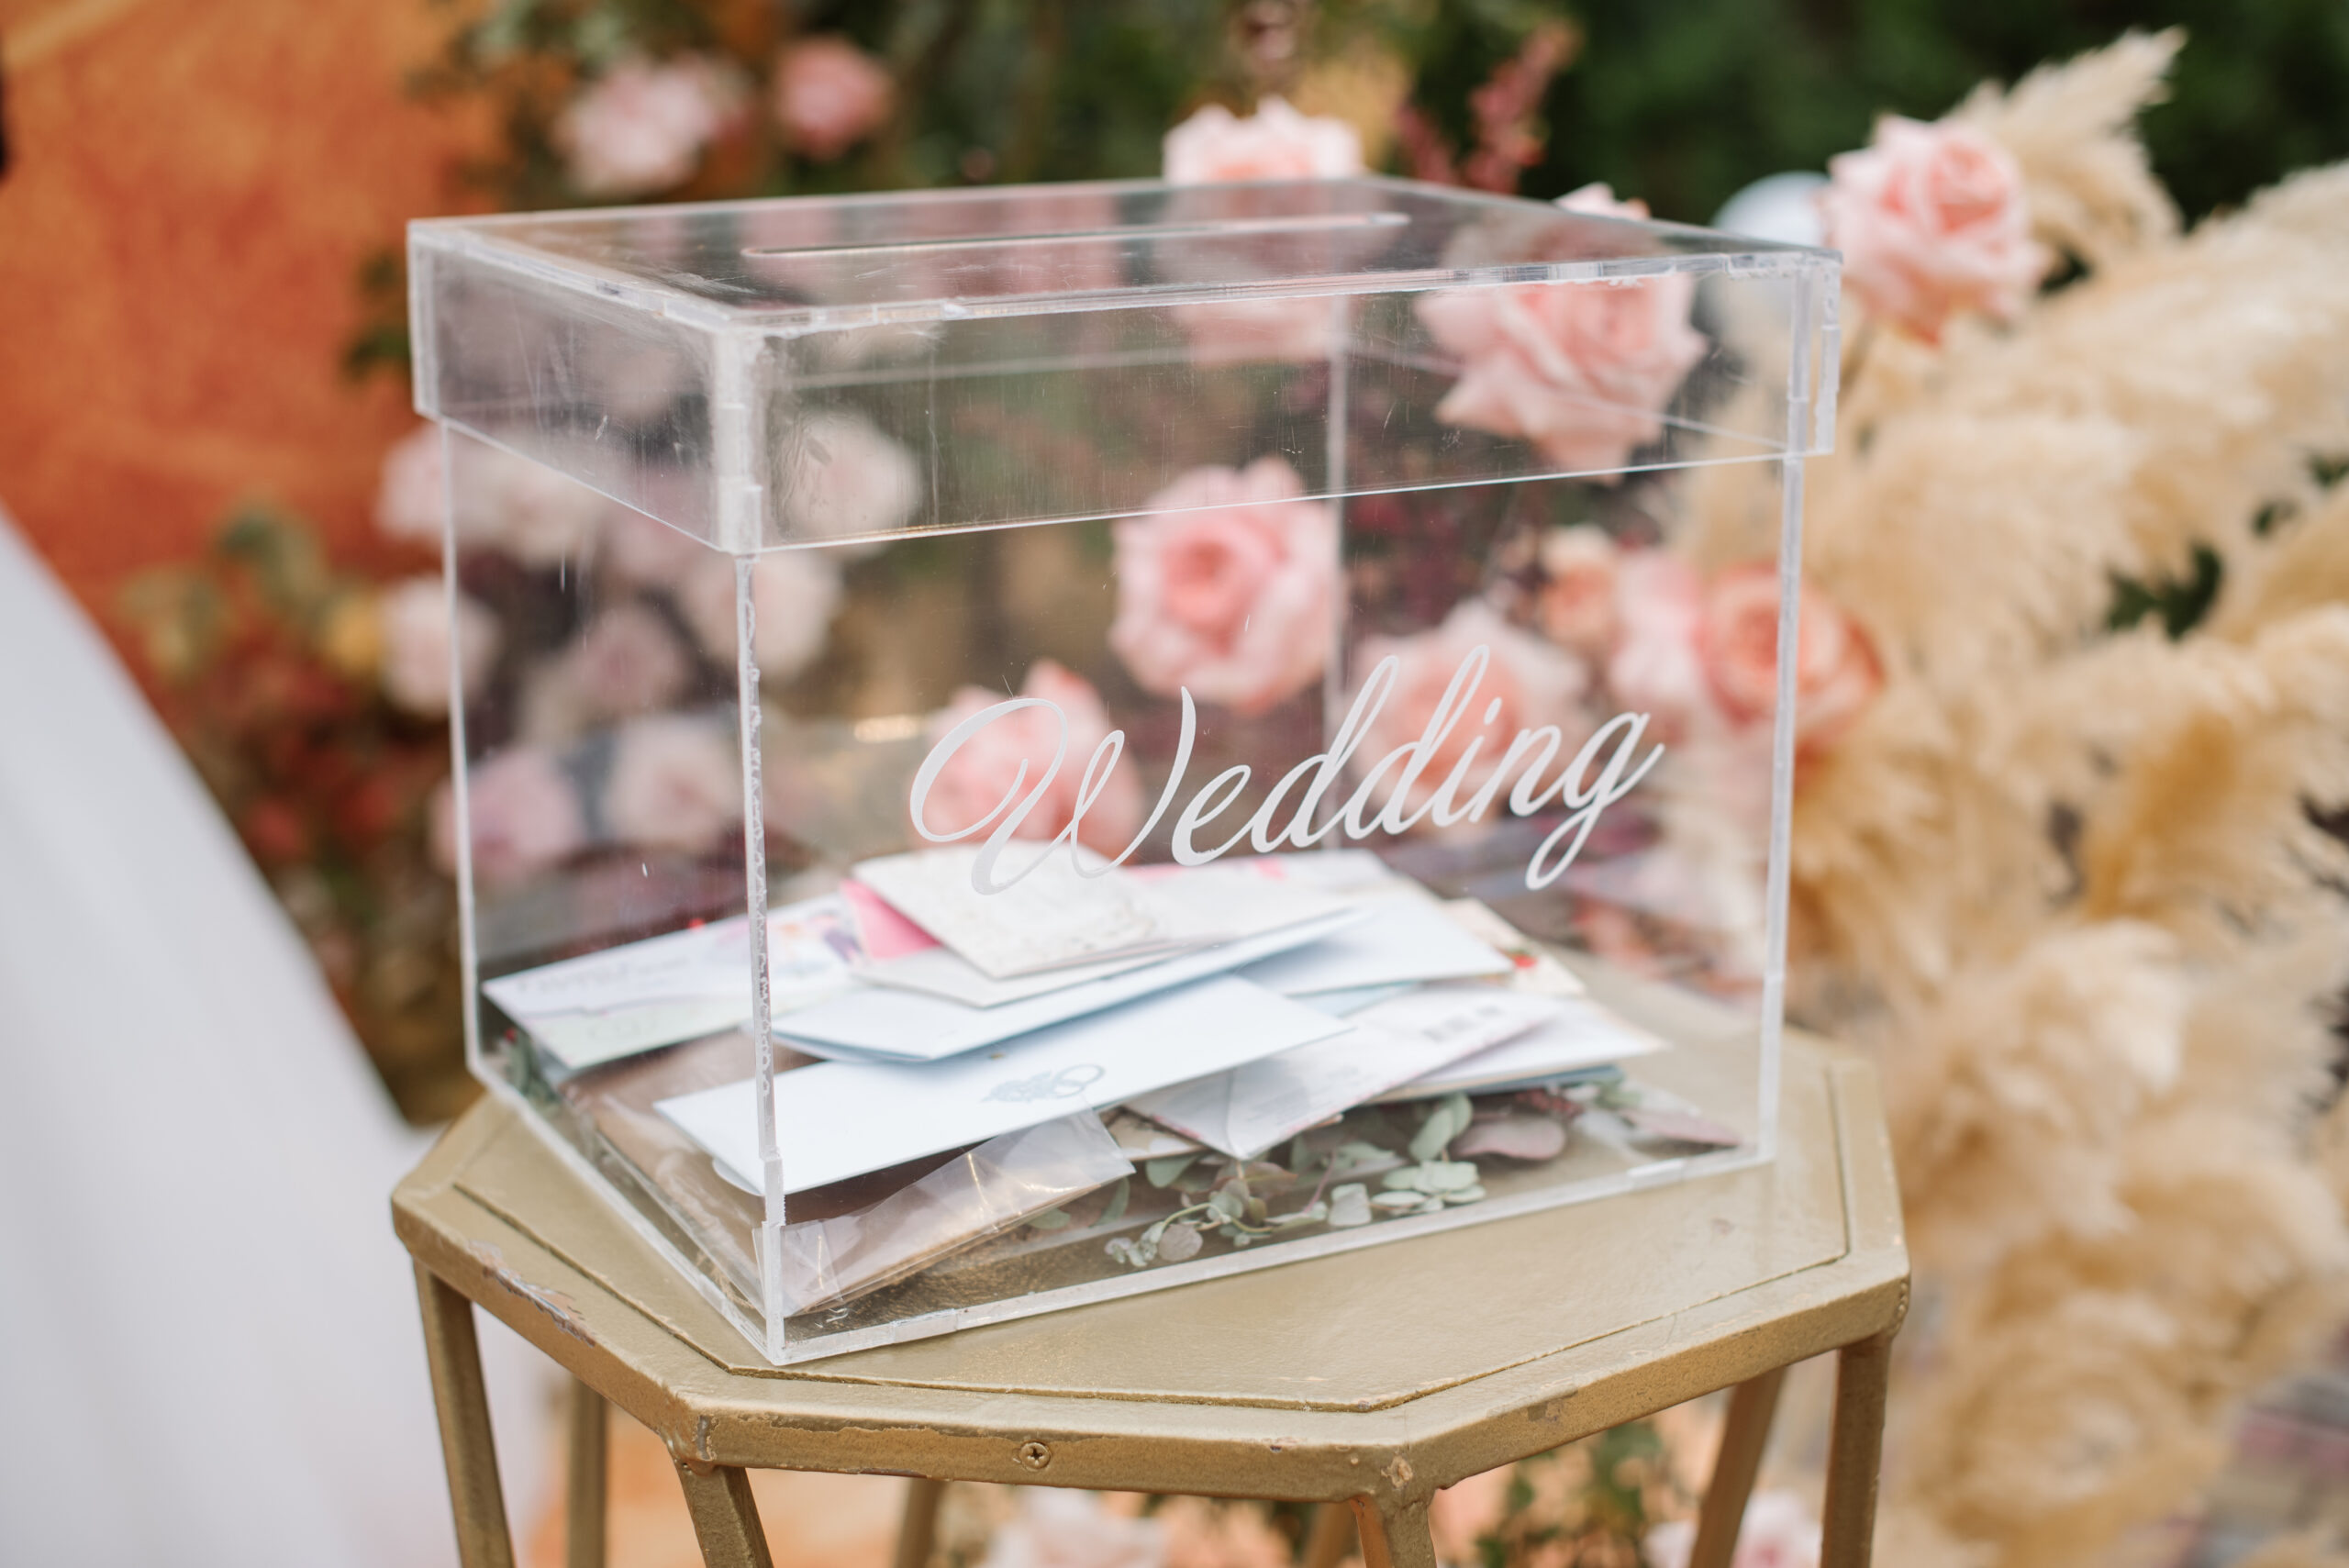 regio Omtrek Hover Geld cadeau bruiloft: hoeveel & hoe leuk geven | Kaartje2go Blog